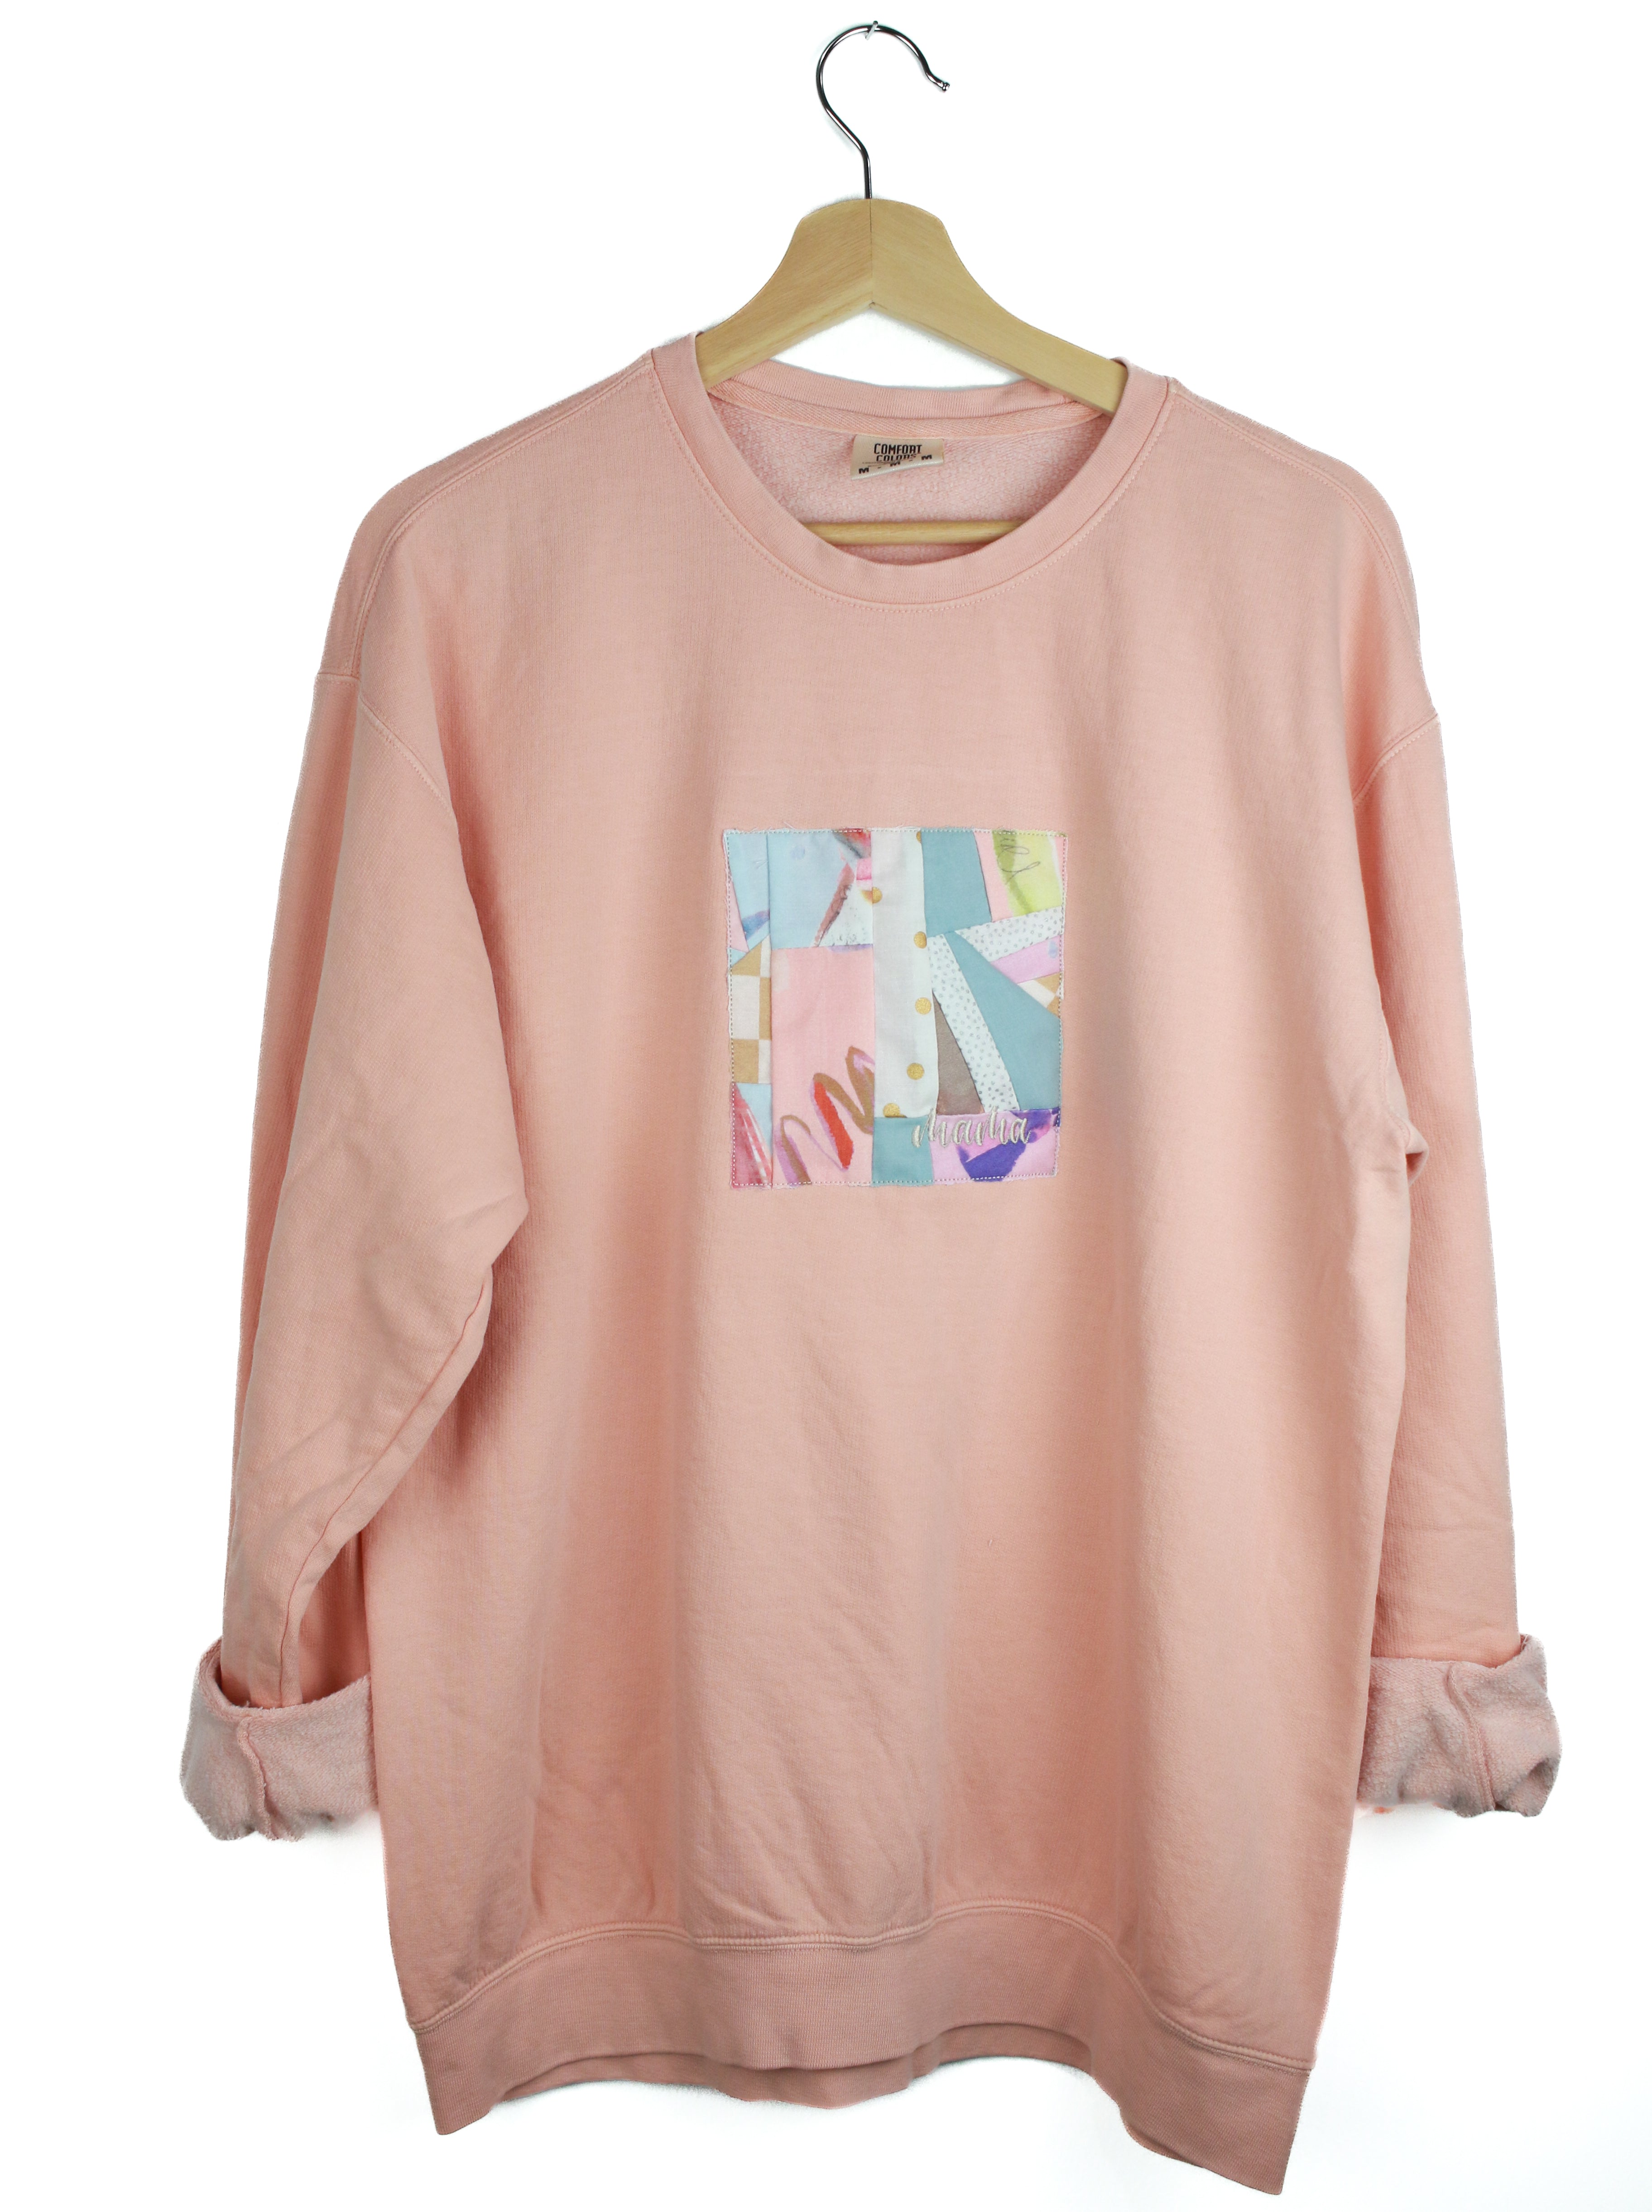 Breezy Lightweight Blush Sweatshirt (Size M)